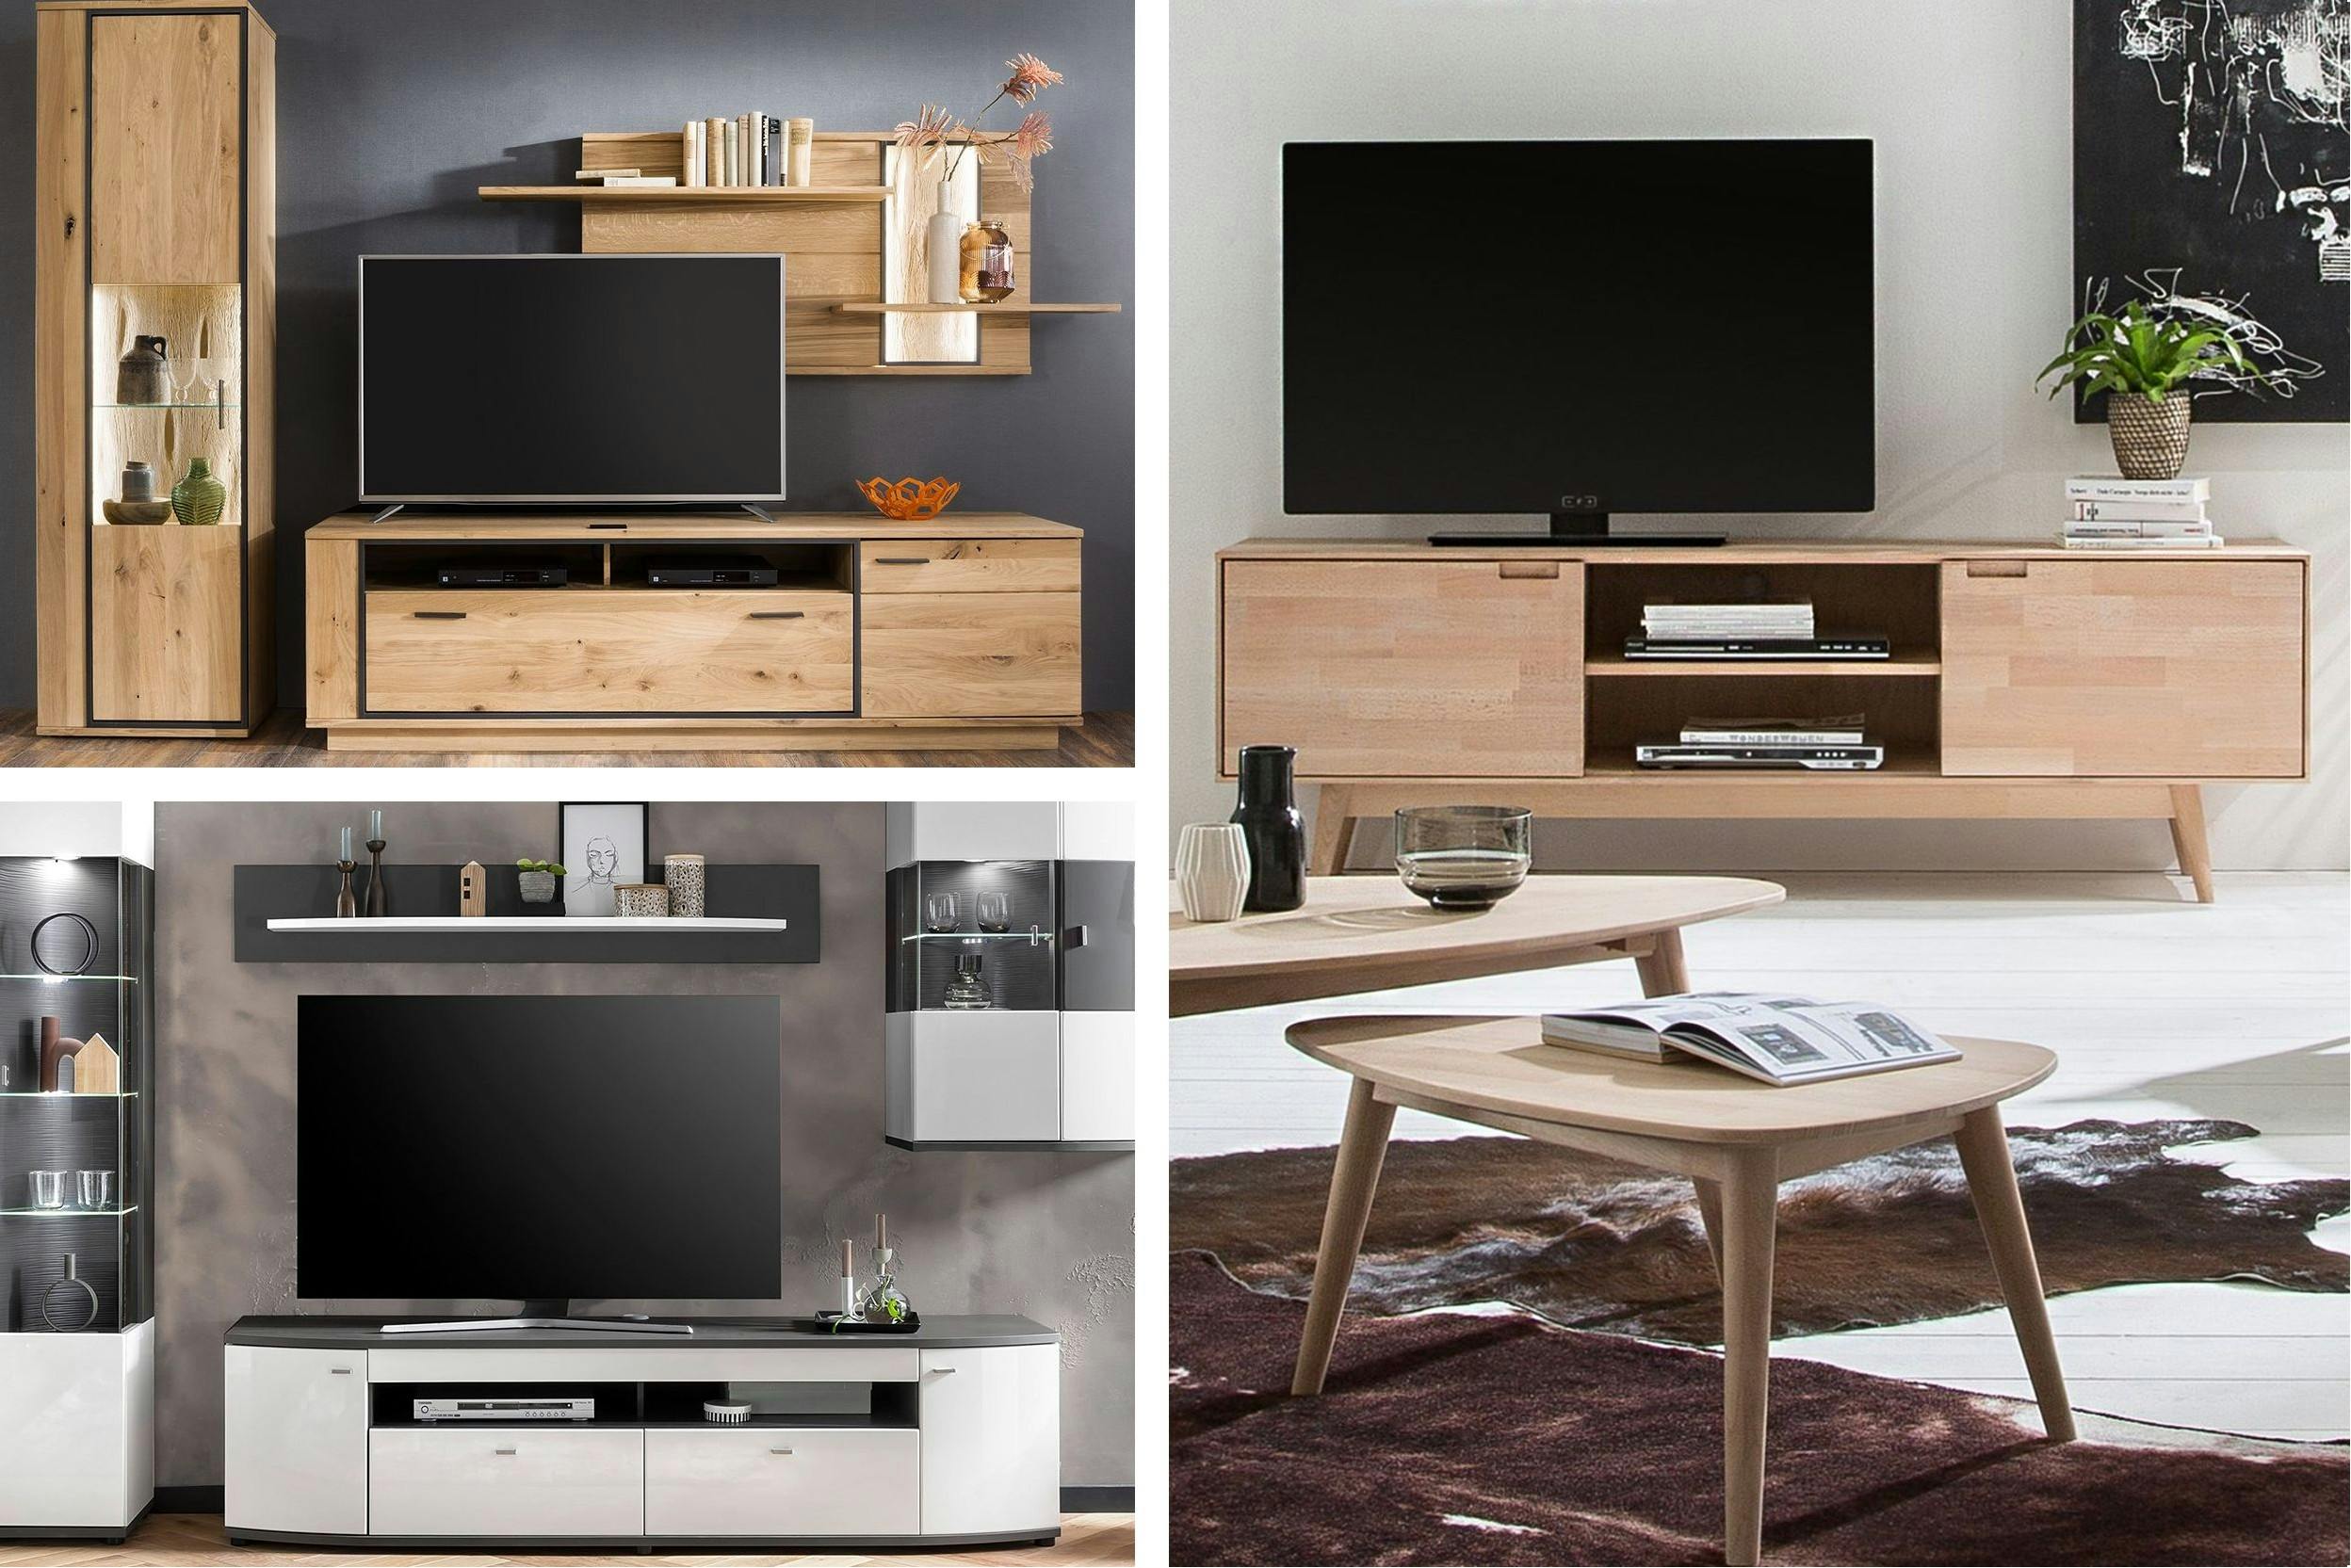 Combo de trois photos de meubles tv avec tv dessus, les trois de styles différents industriel, moderne et scandinave